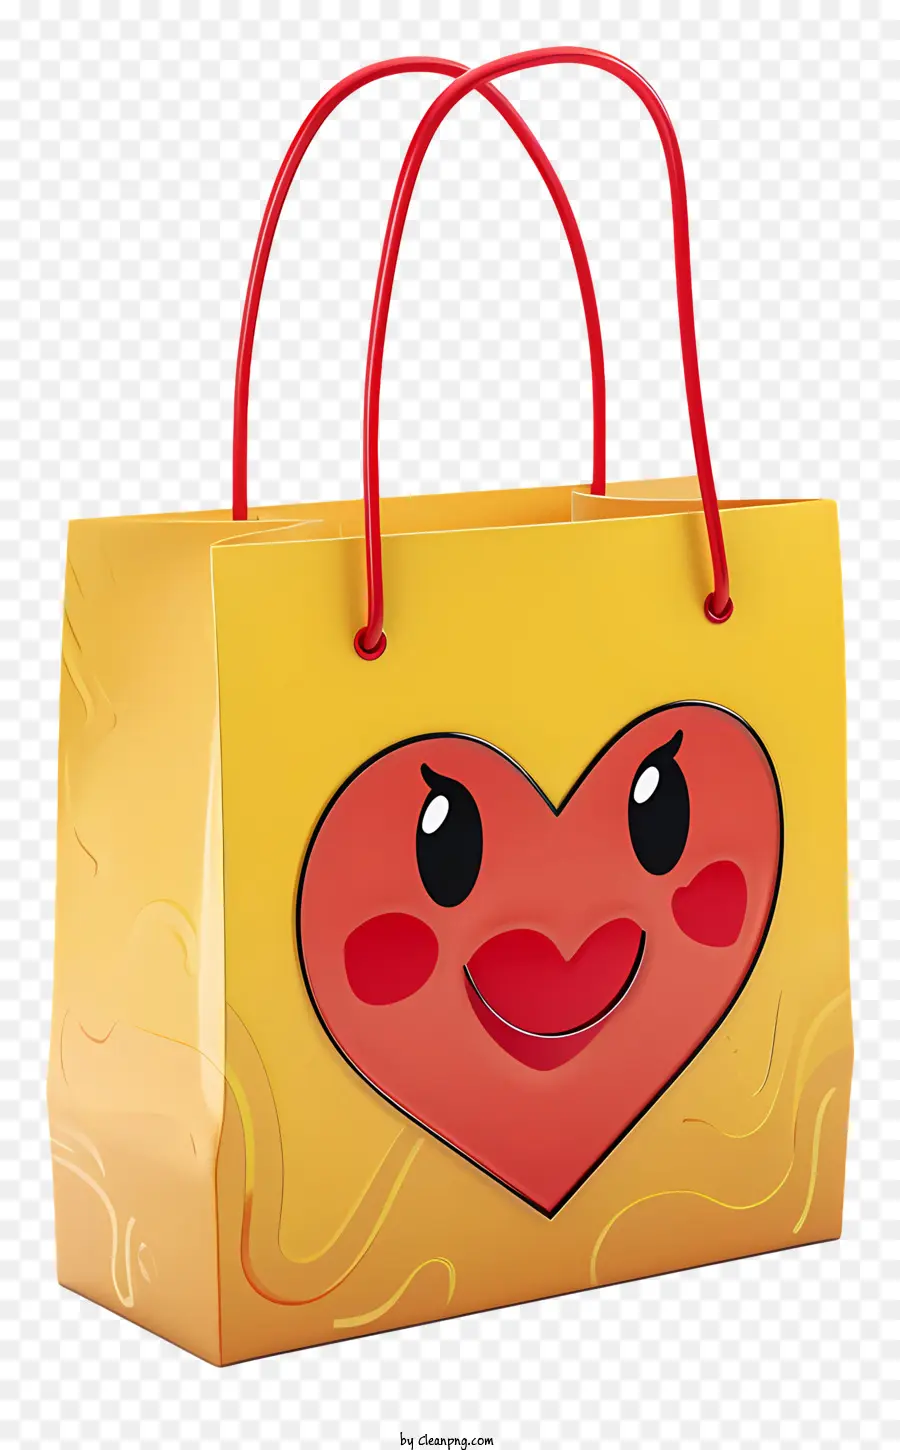 sacchetto - Borsa per la spesa dalla faccia a cuore con espressione sorridente